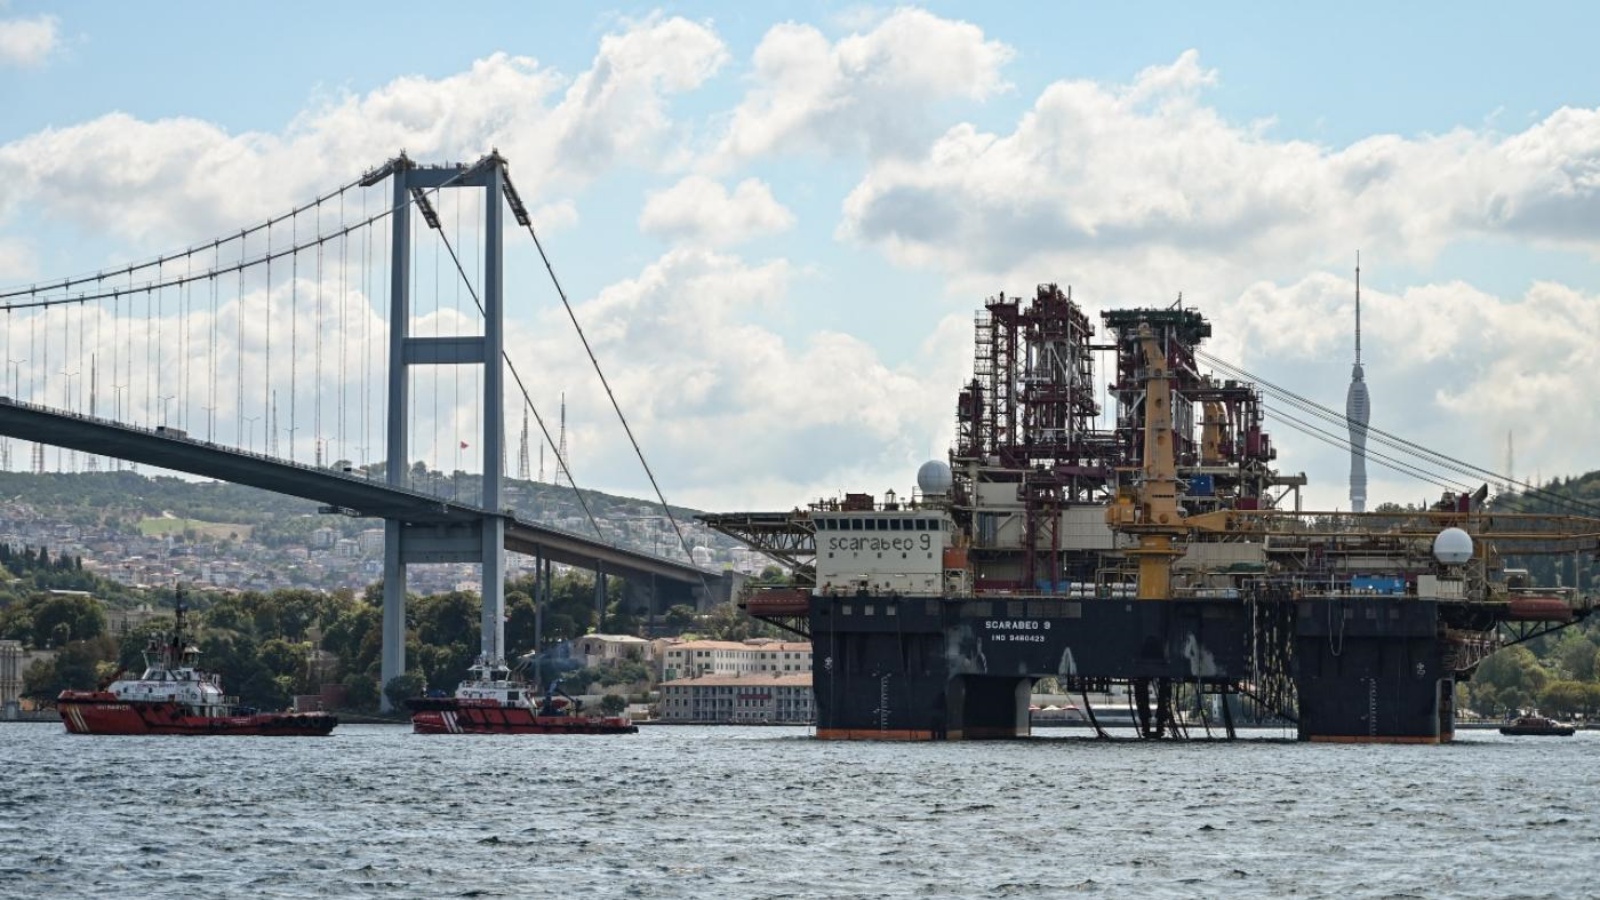 منصة حفر تمر بالقرب من جسر شهداء 15 يوليو على مضيق البوسفور في طريقها إلى البحر الأسود، في اسطنبول، 29 أغسطس 2019